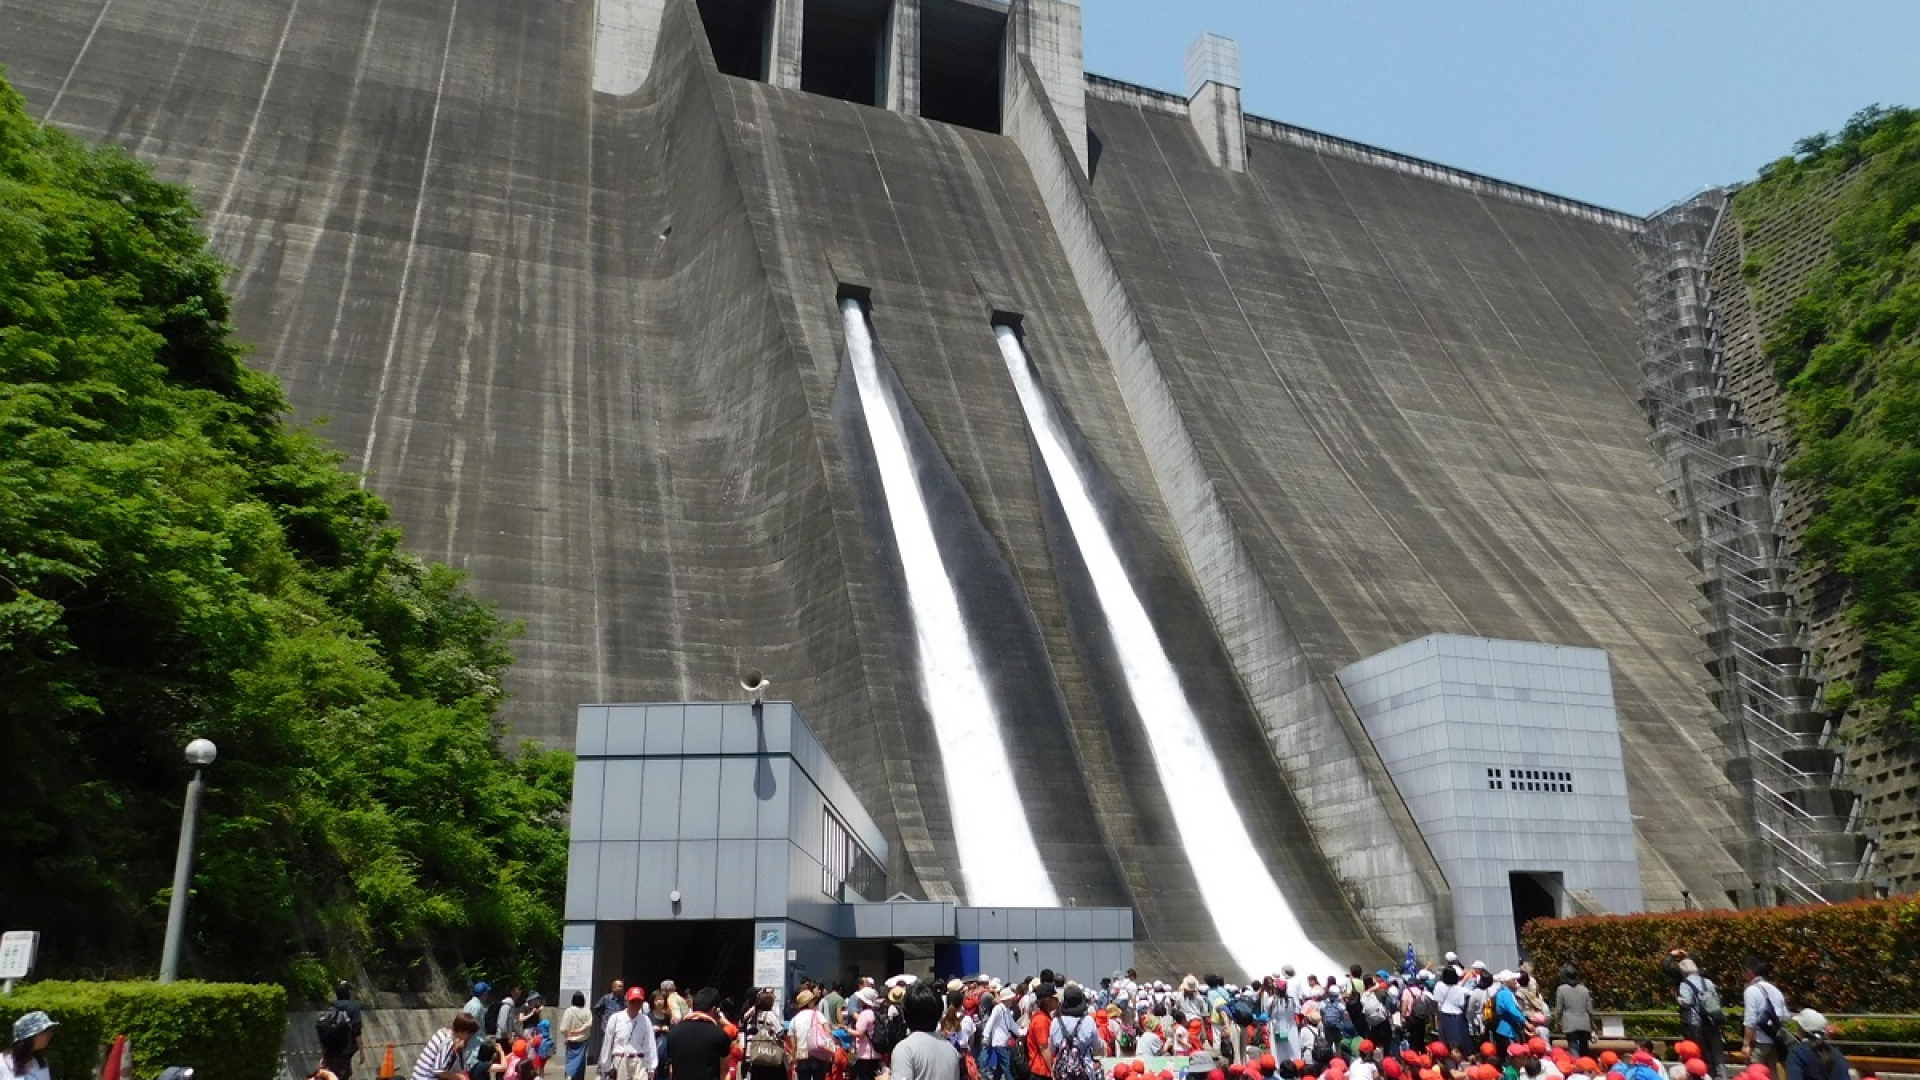 Miyagase Dam Sightseeing (Opening of the Floodgates)